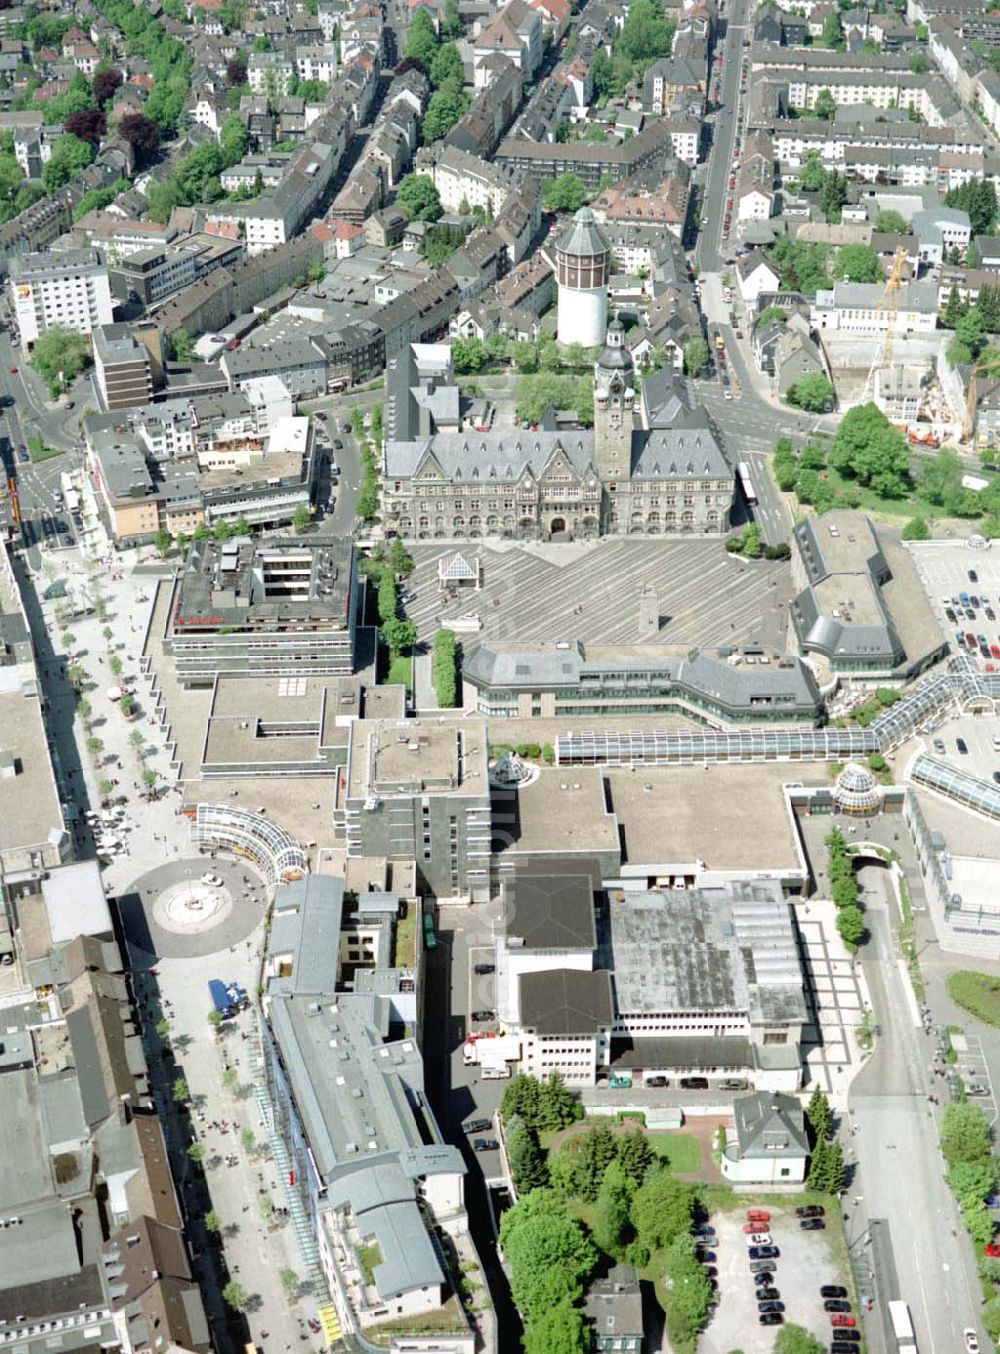 Aerial image Remscheid - Einkaufs- und Geschäftszentrums Allee Center in der Remscheider Innenstadt - ein Projekt der ECE Hamburg.